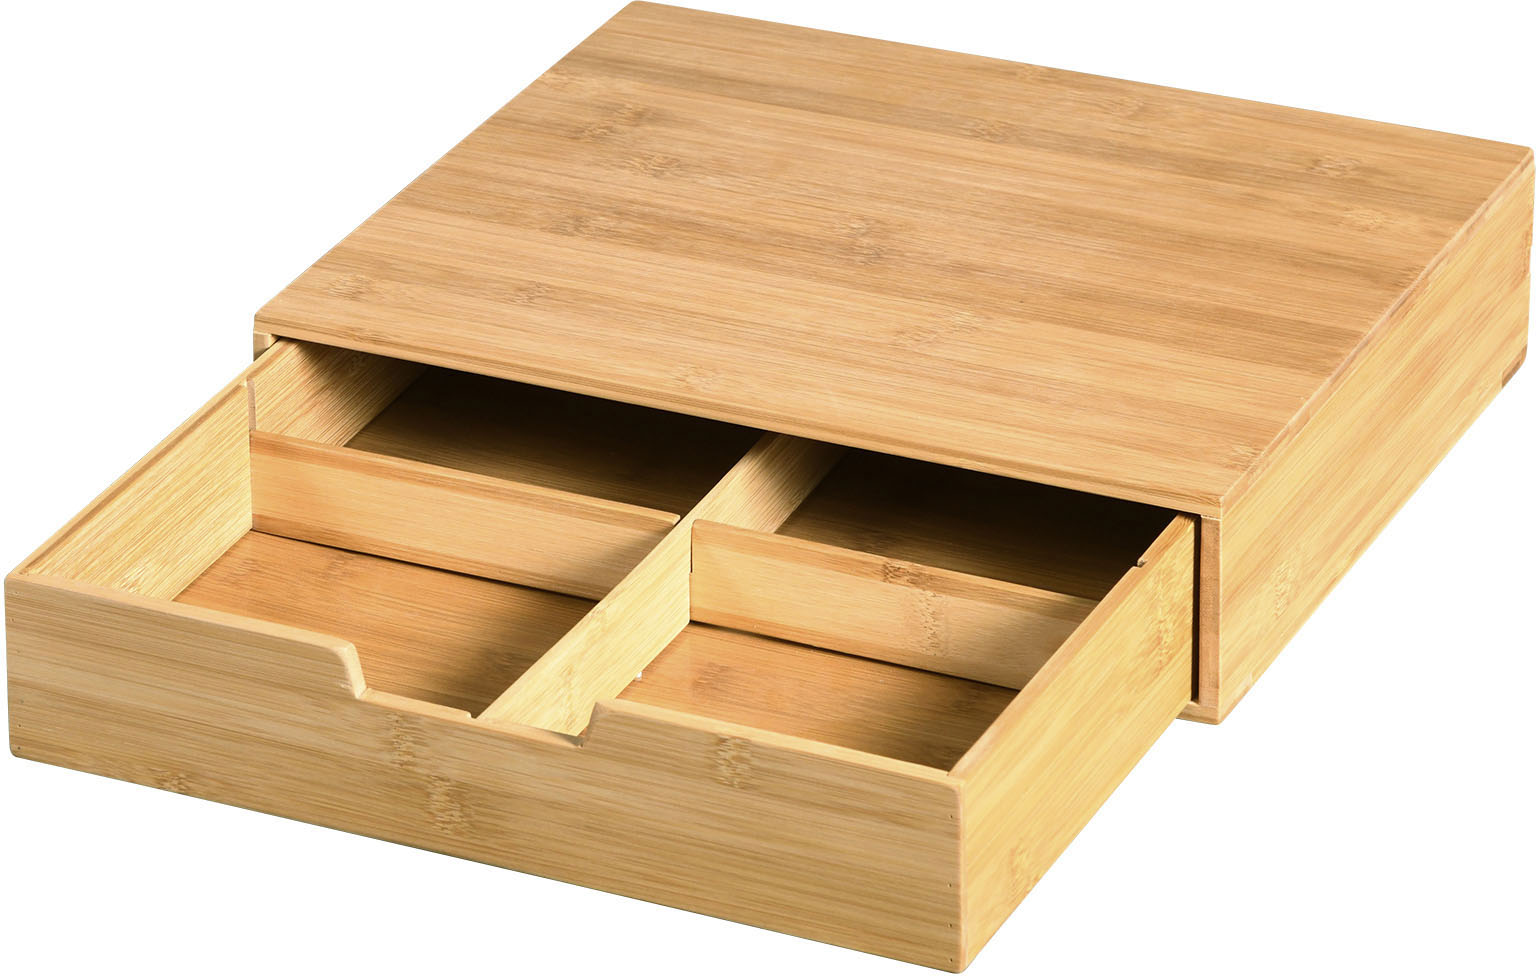 KESPER for kitchen & home Teebox, (1 tlg.), mit herausziehbarer Schublade, aus FSC-zertifiziertem Bambus